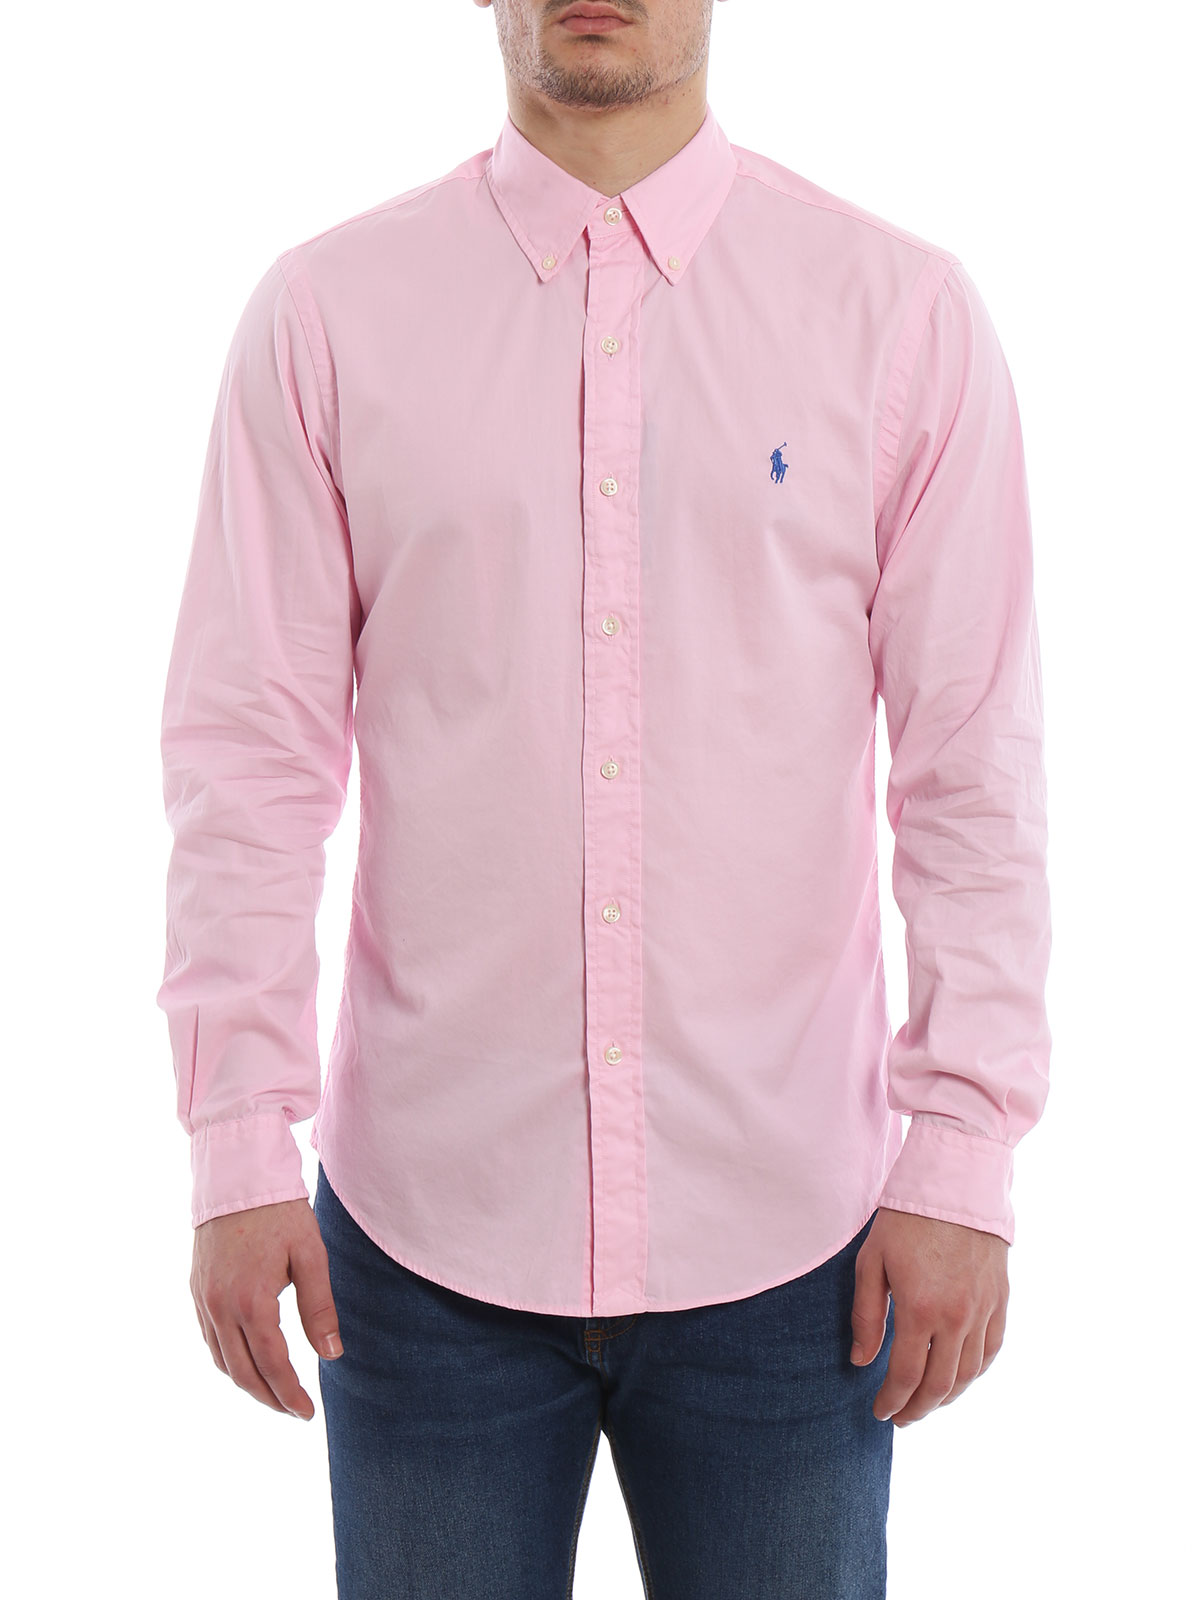 Polo Ralph Lauren - Pink cotton shirt 